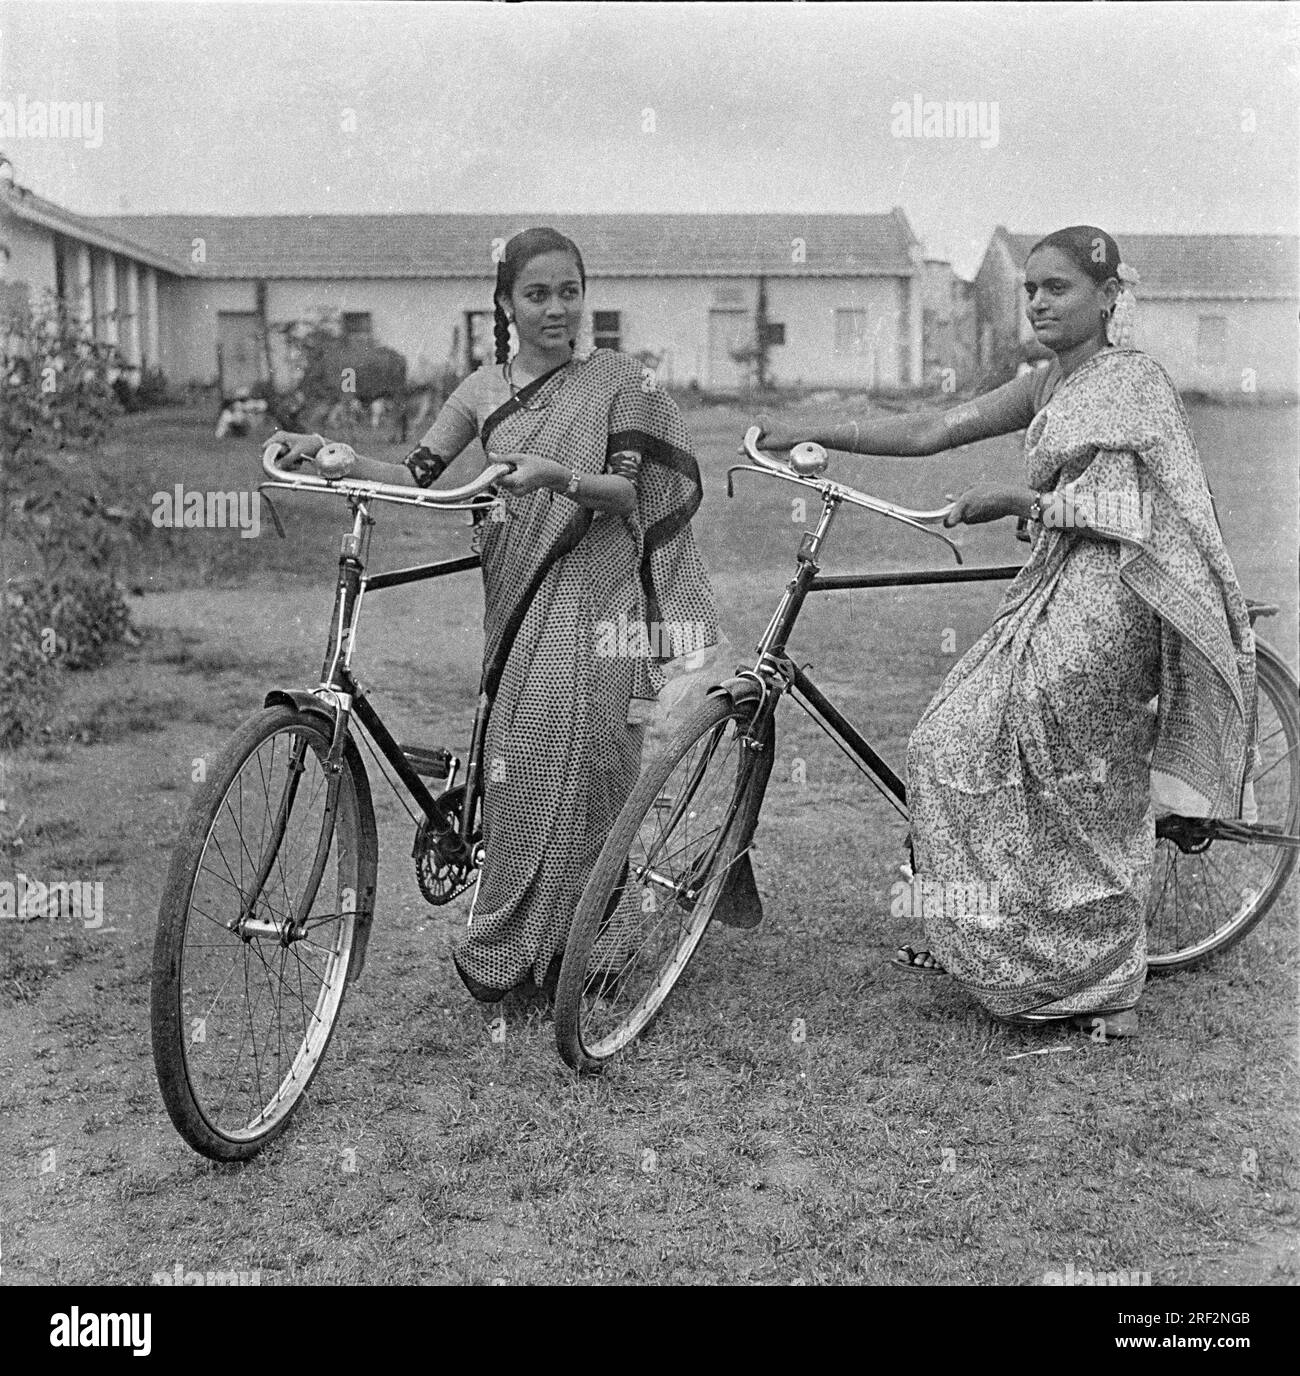 Vecchia immagine vintage in bianco e nero degli anni '1900 di donne indiane, ragazze, biciclette che indossano sari India 1940 Foto Stock